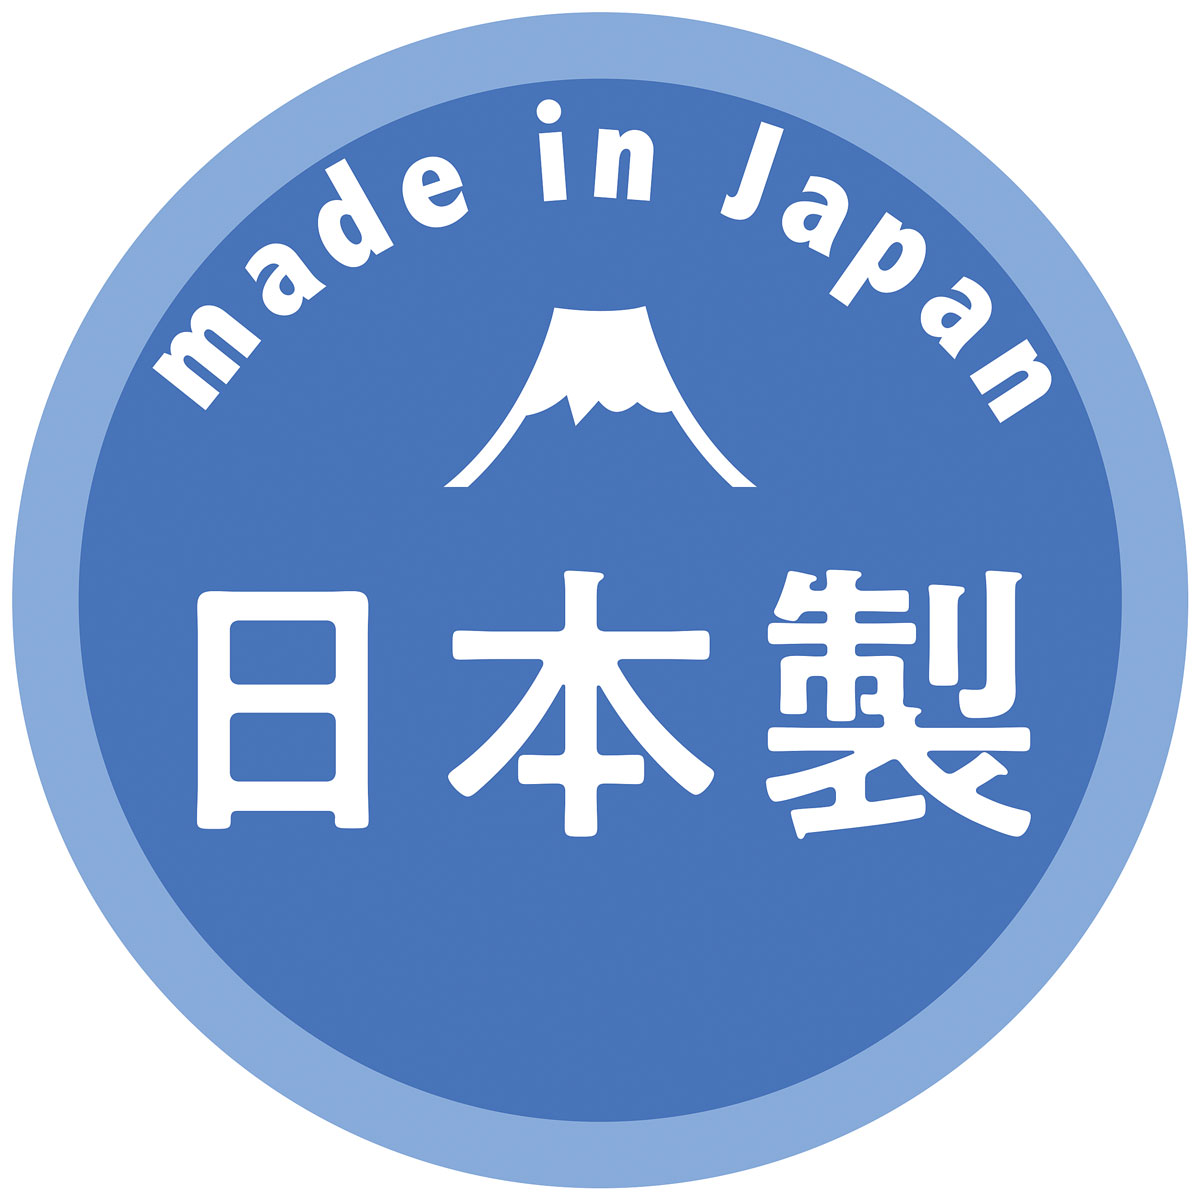 【栃木レザー】 日本製 -二つ折りロングウォレット